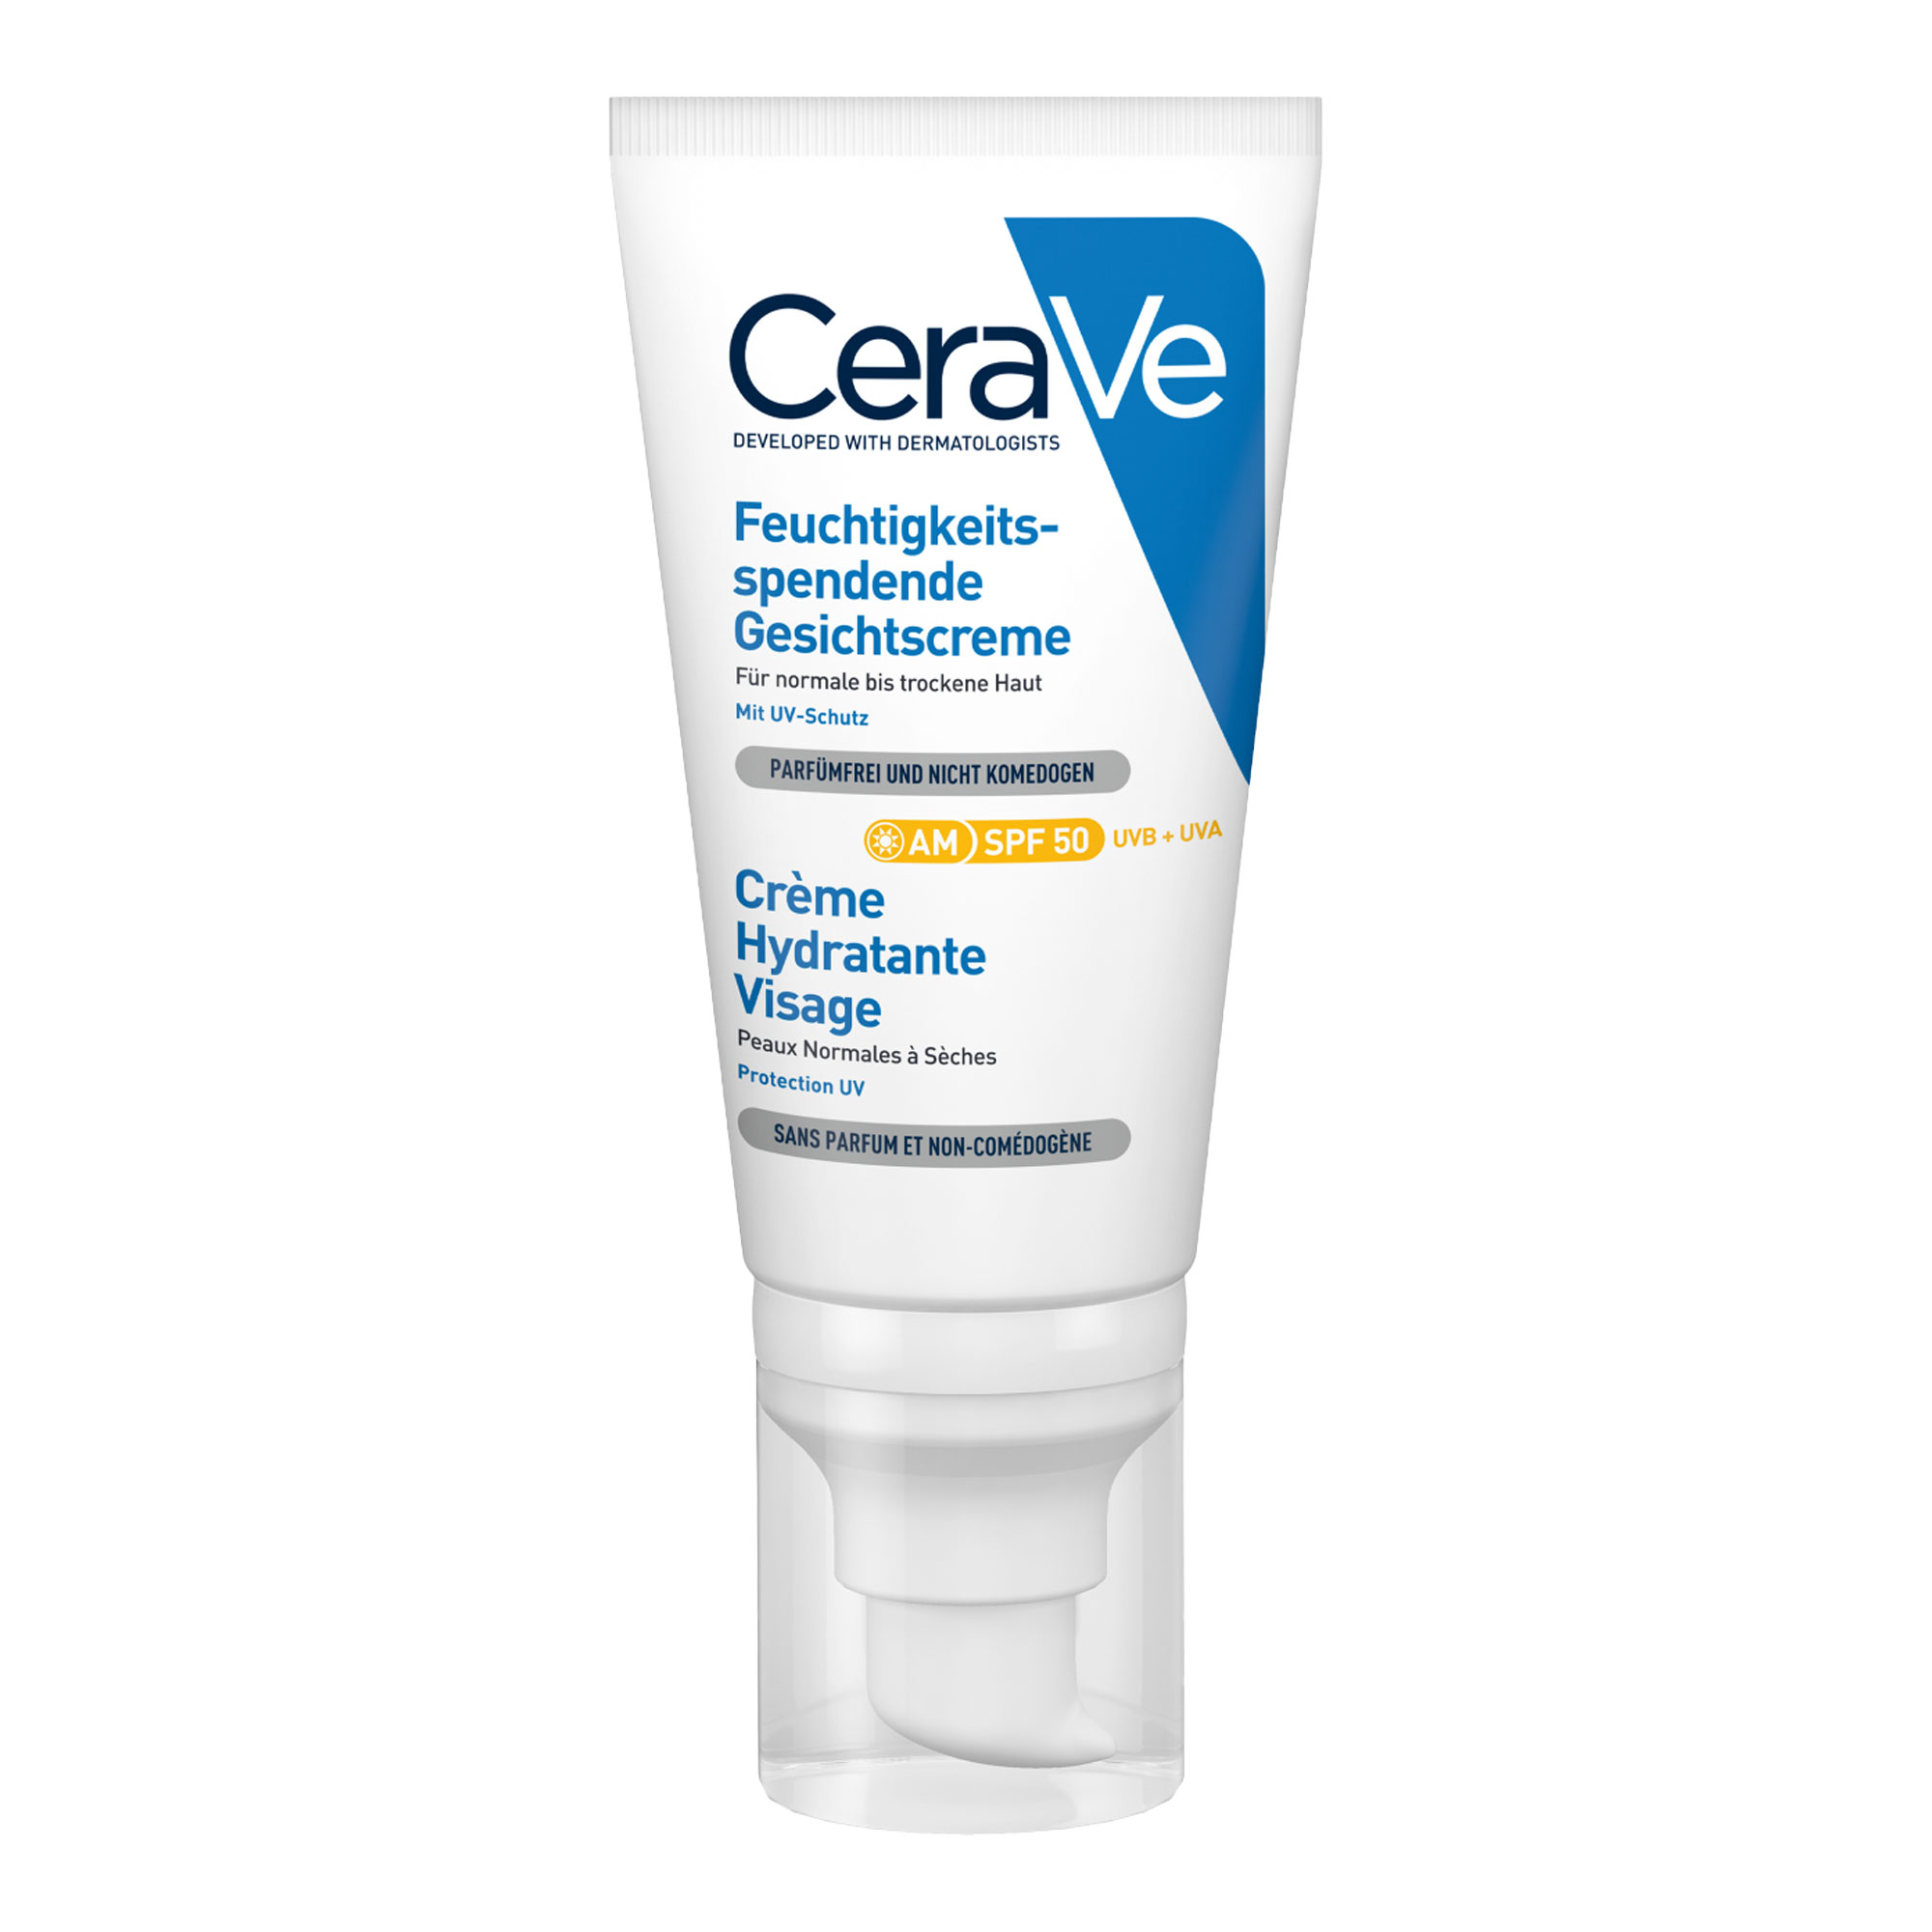 Leichte Gesichtscreme, die mit LSF 50 vor UVA- und UVB-Strahlung schützt. Für normale bis trockene sowie empfindliche Haut geeignet.